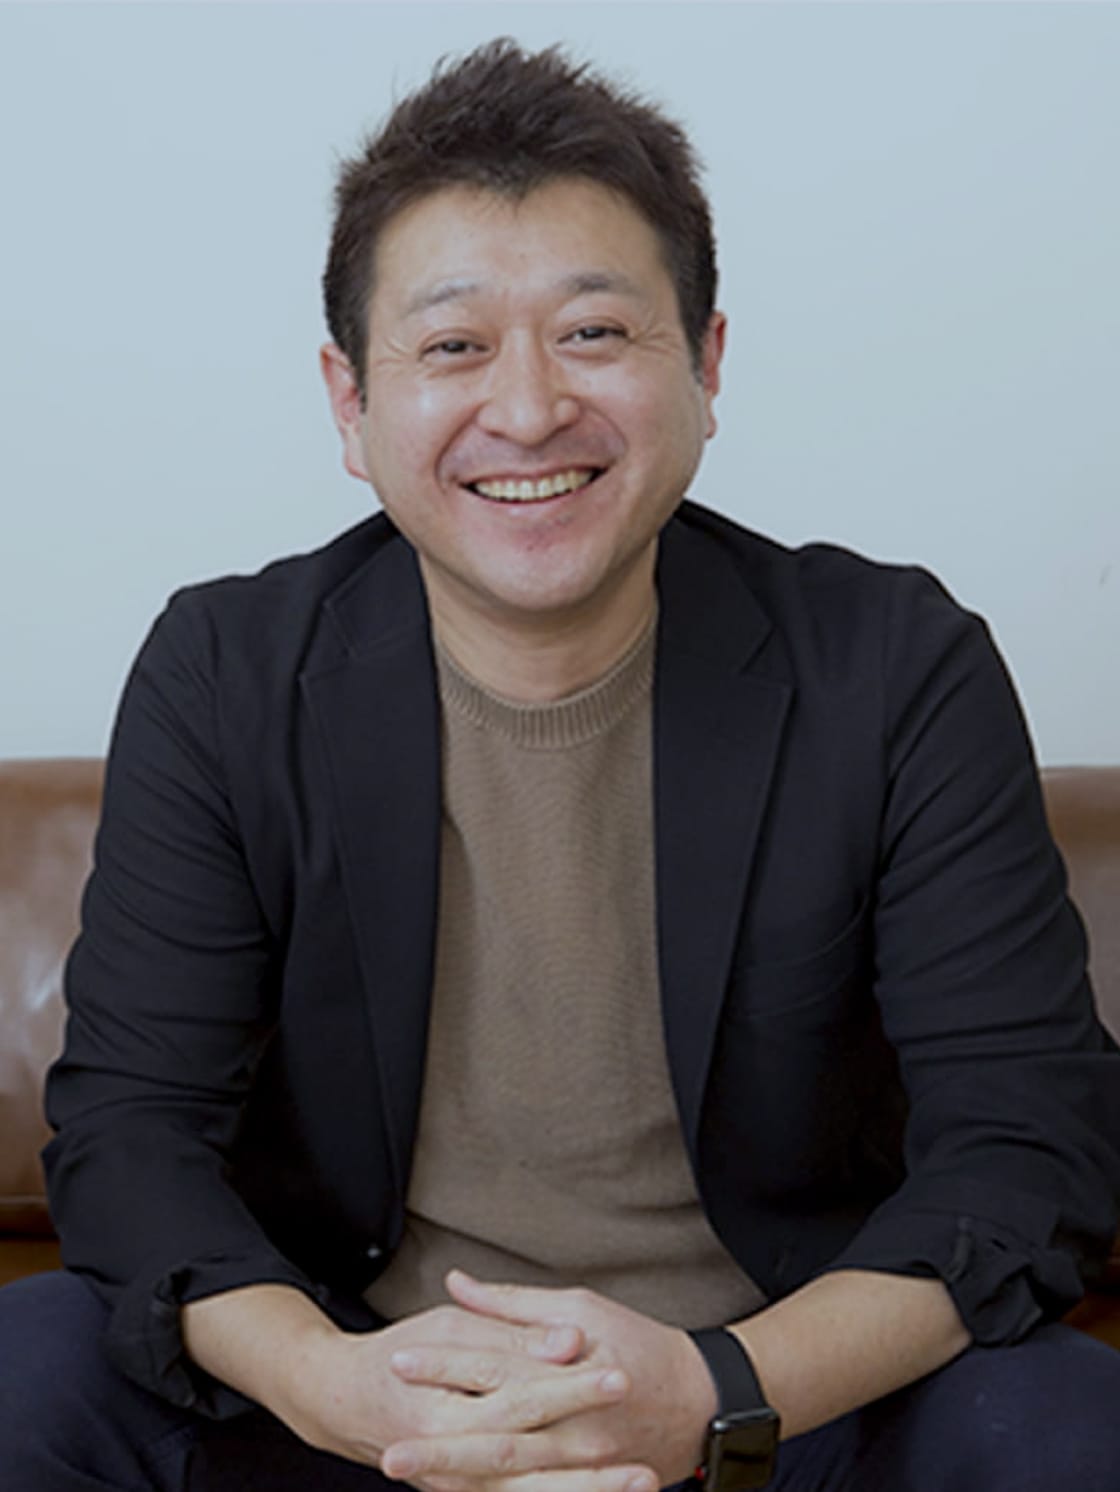 株式会社ジョリーグッド代表取締役CEO 上路 健介